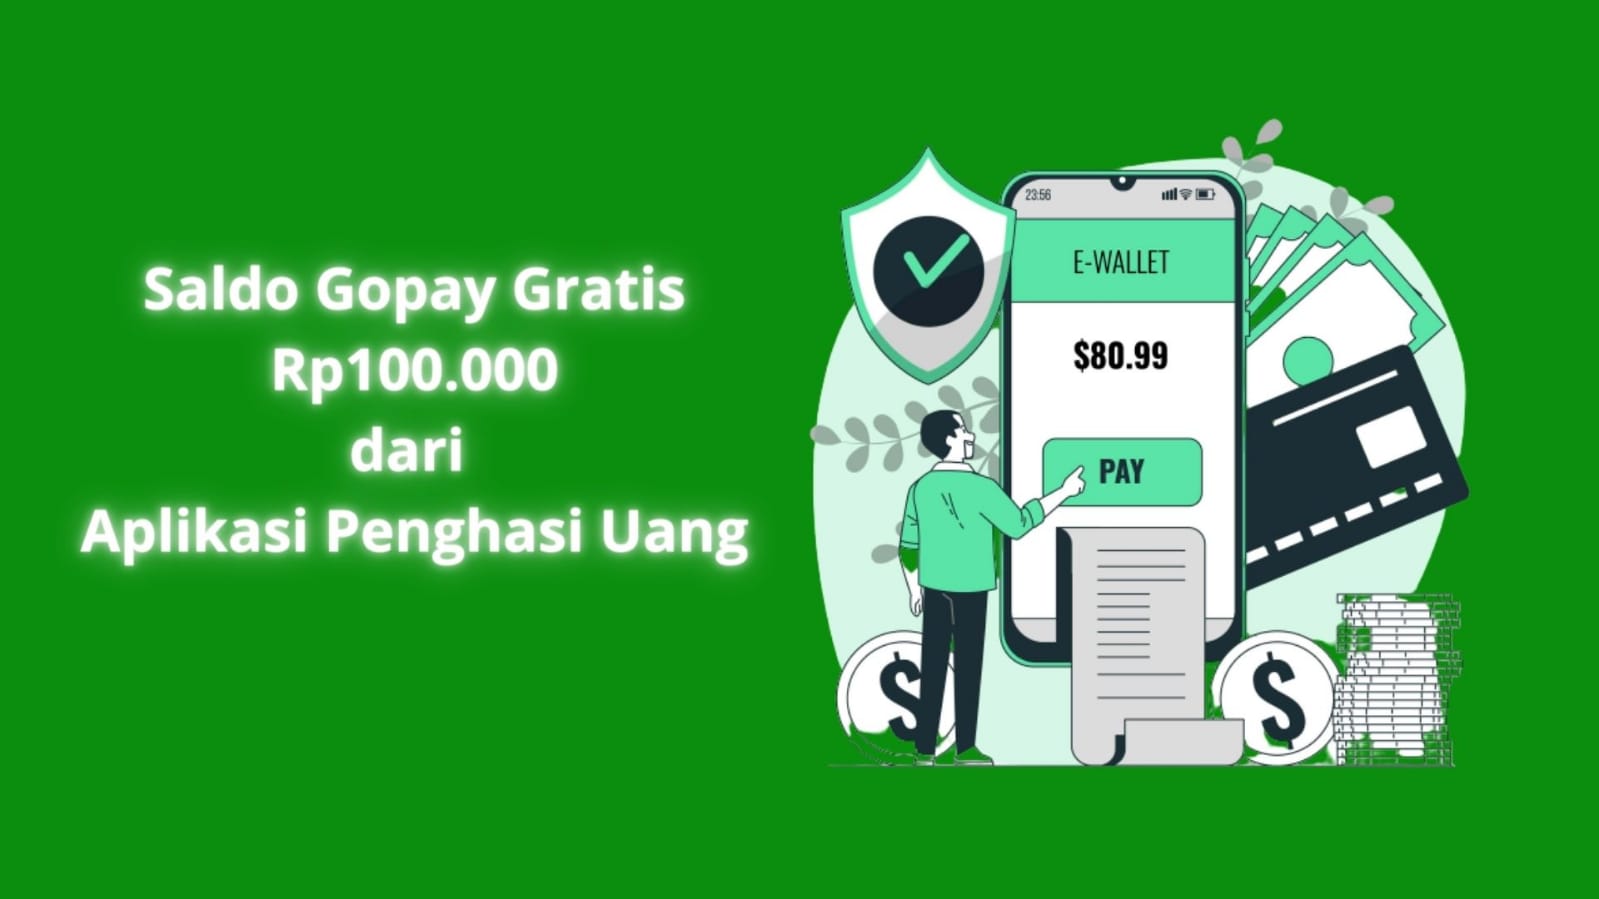 Ambil Saldo Gopay Gratis Rp100.000 dari Aplikasi Penghasil Uang, Dijamin Cair!